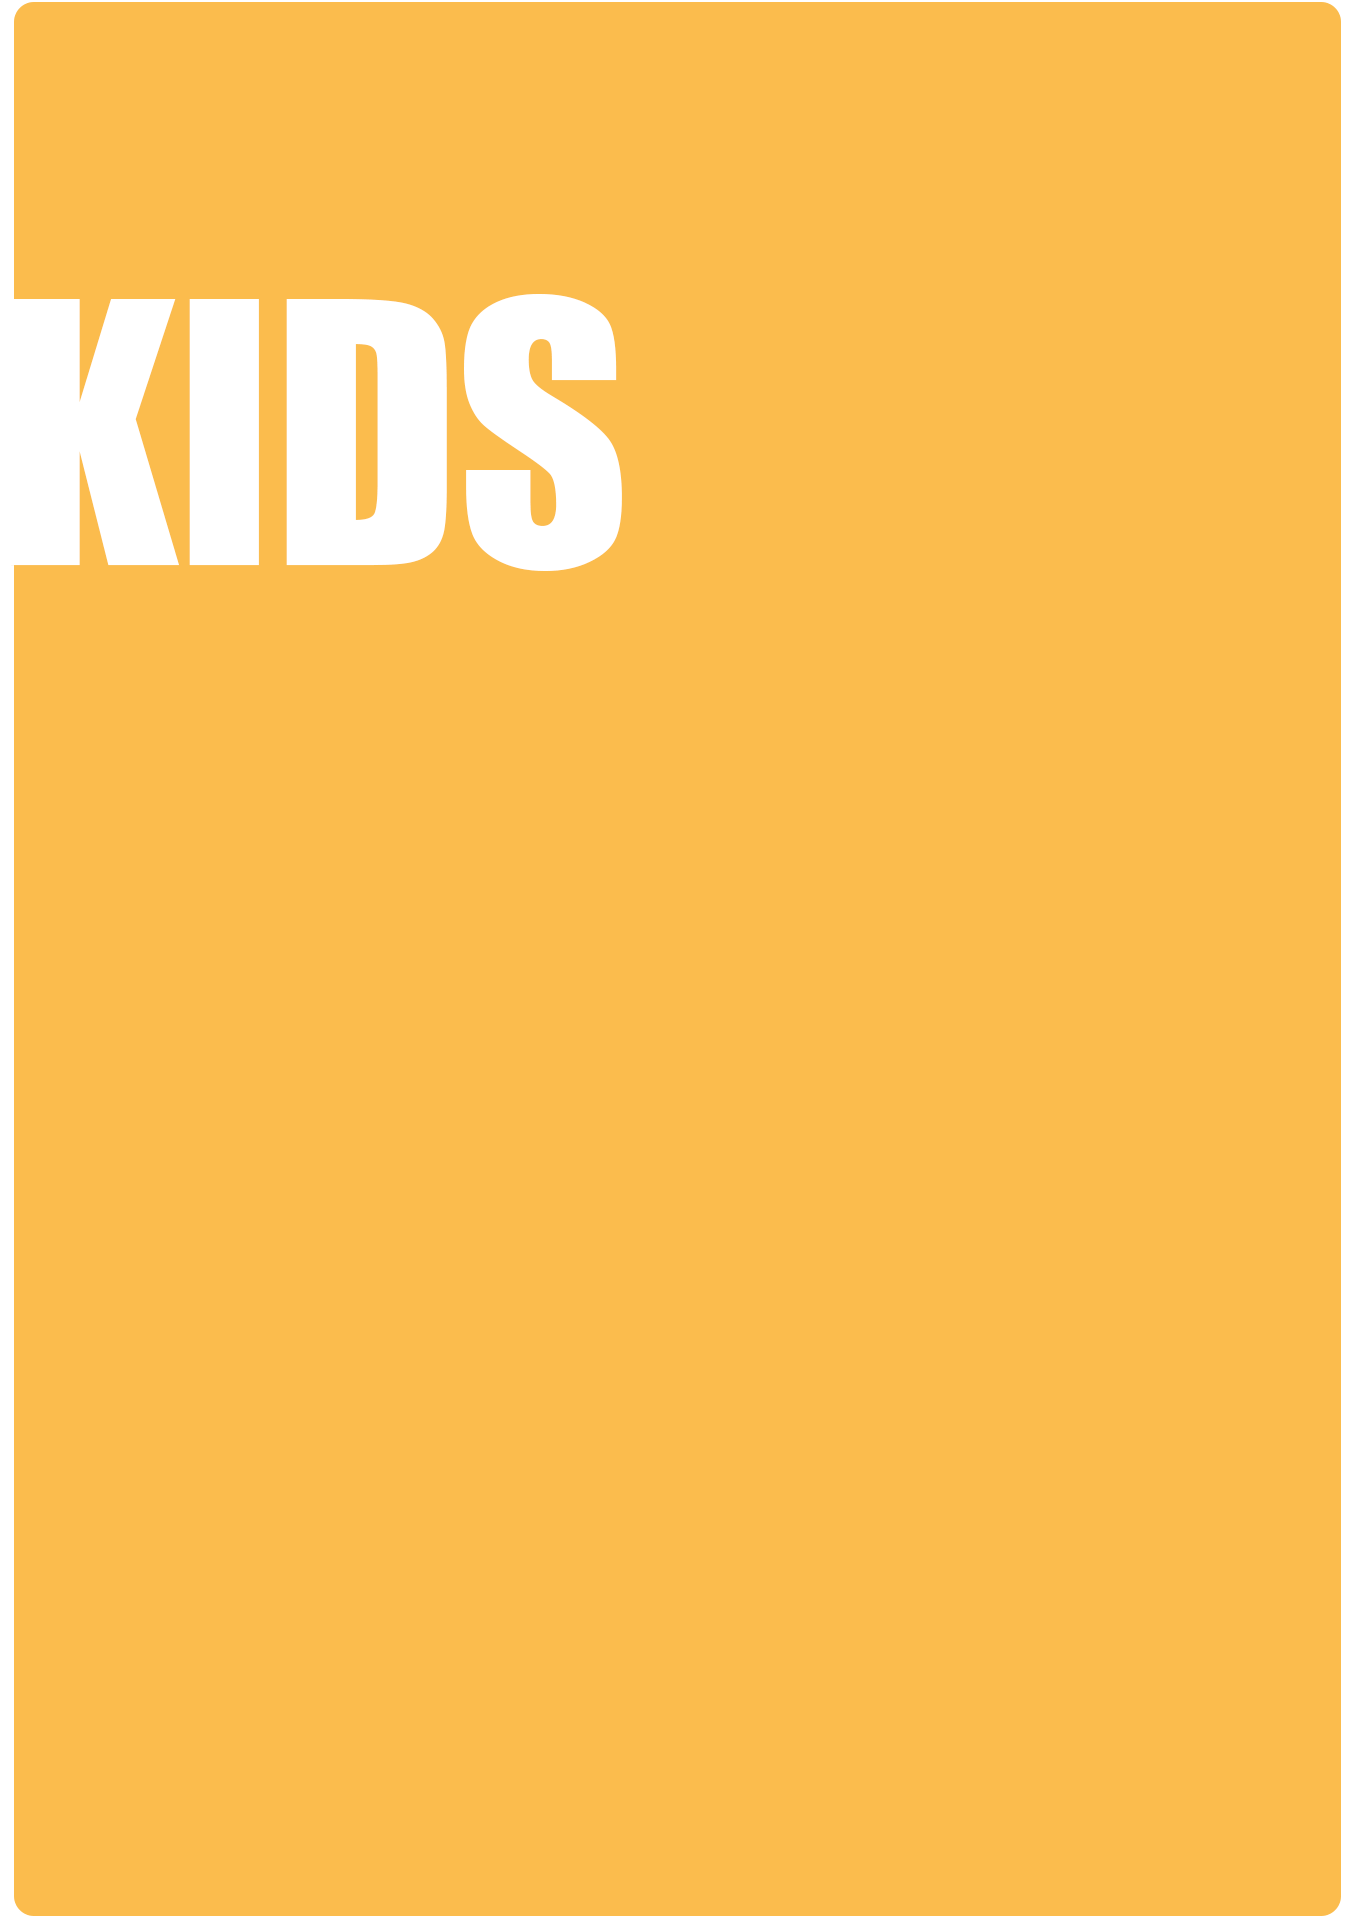 kids